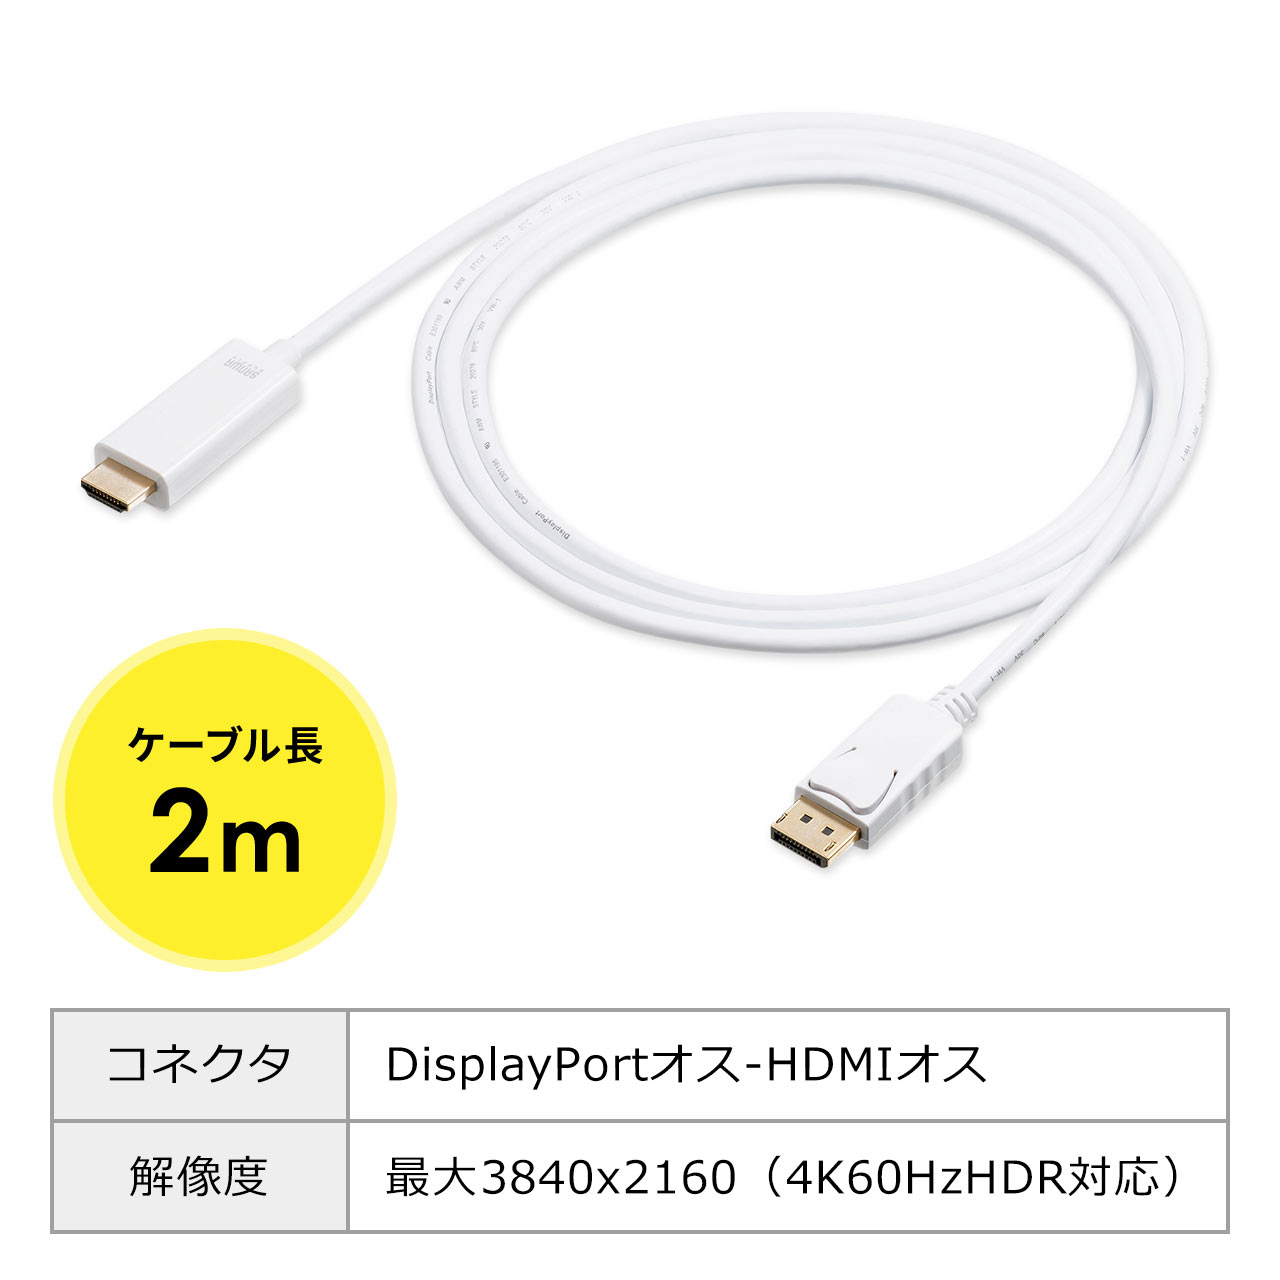 DisplayPort-HDMIϊP[ui4K/60HzΉEHDRΉE2mEzCgj 500-KC032-2